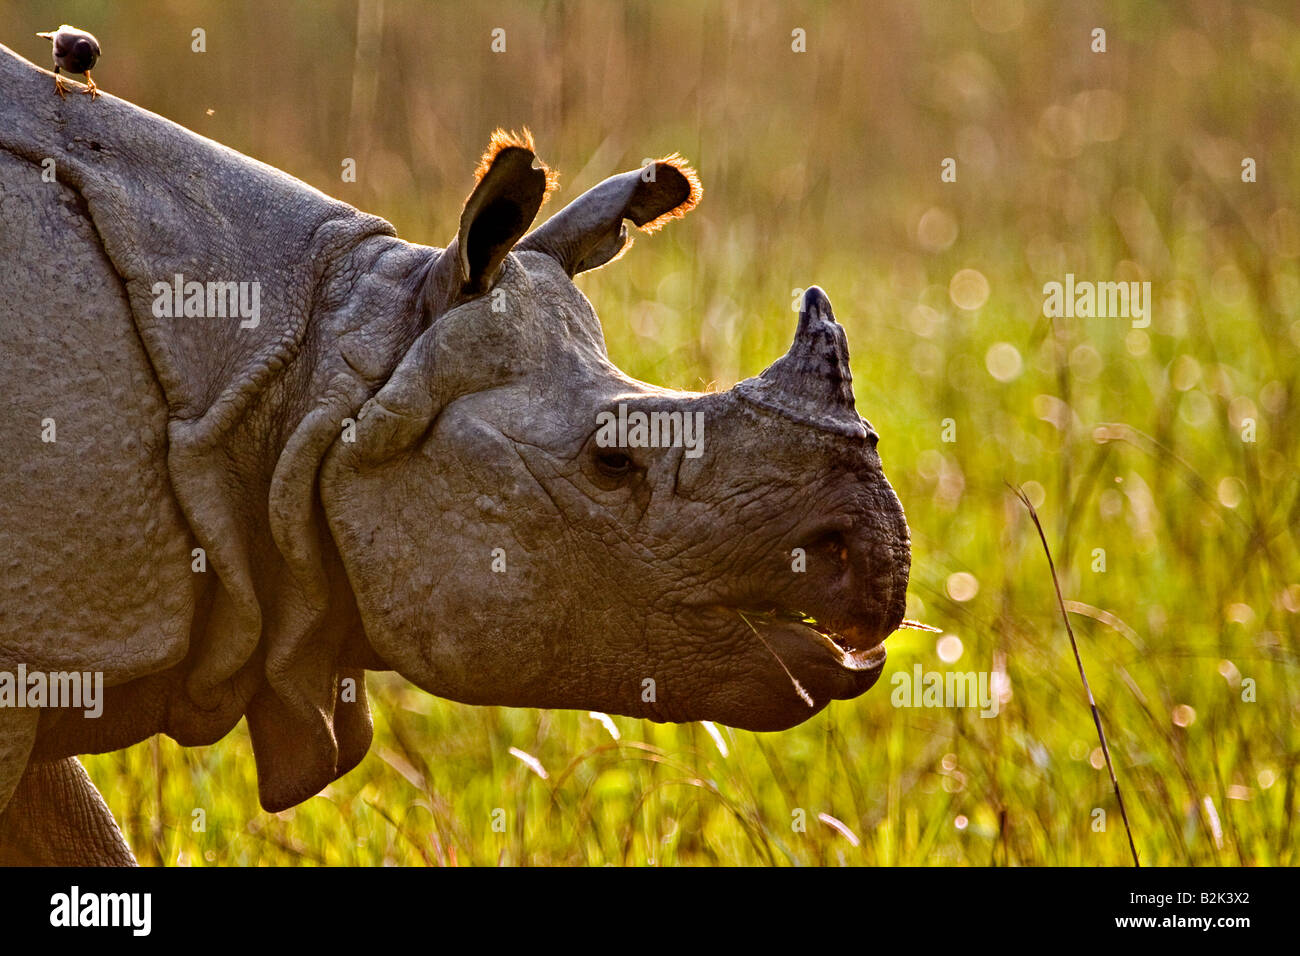 Head shot d'un écran rétroéclairé asiatique longicorne rhinocéros dans le parc national de Kaziranga dans le nord-est de l'état indien de l'Assam Banque D'Images